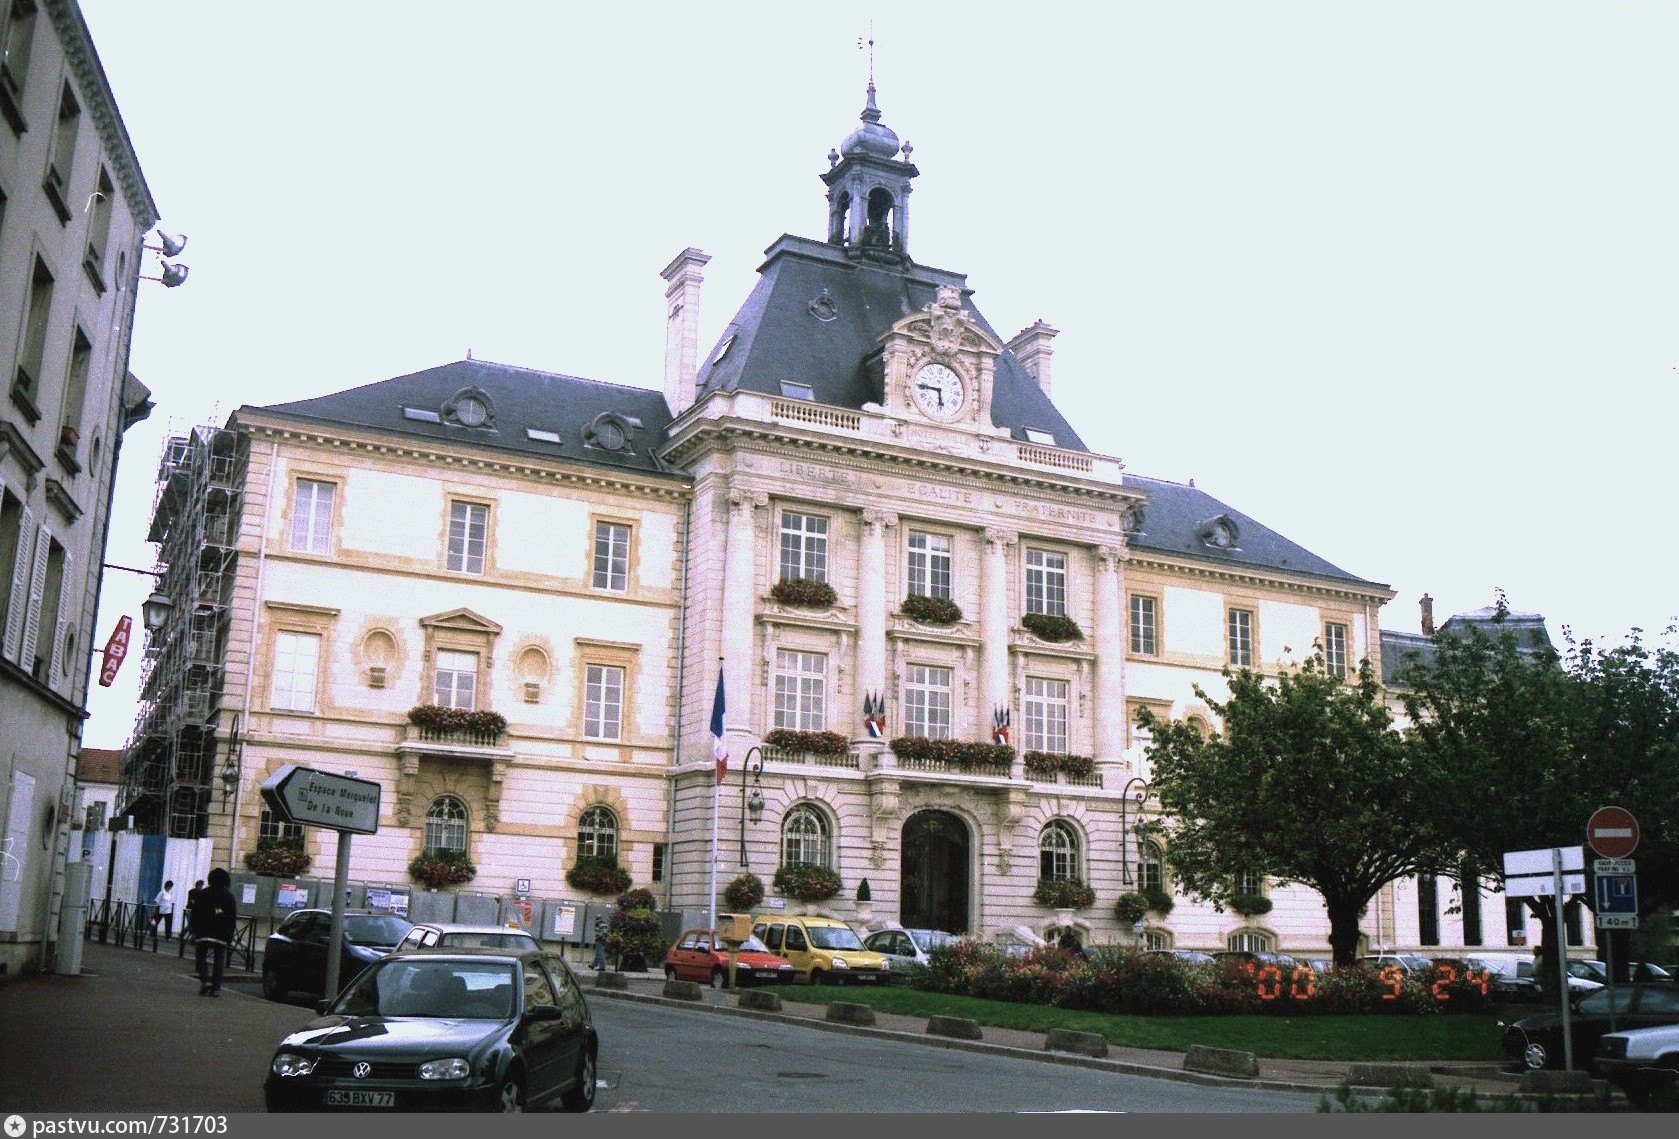 Mairie de Meaux